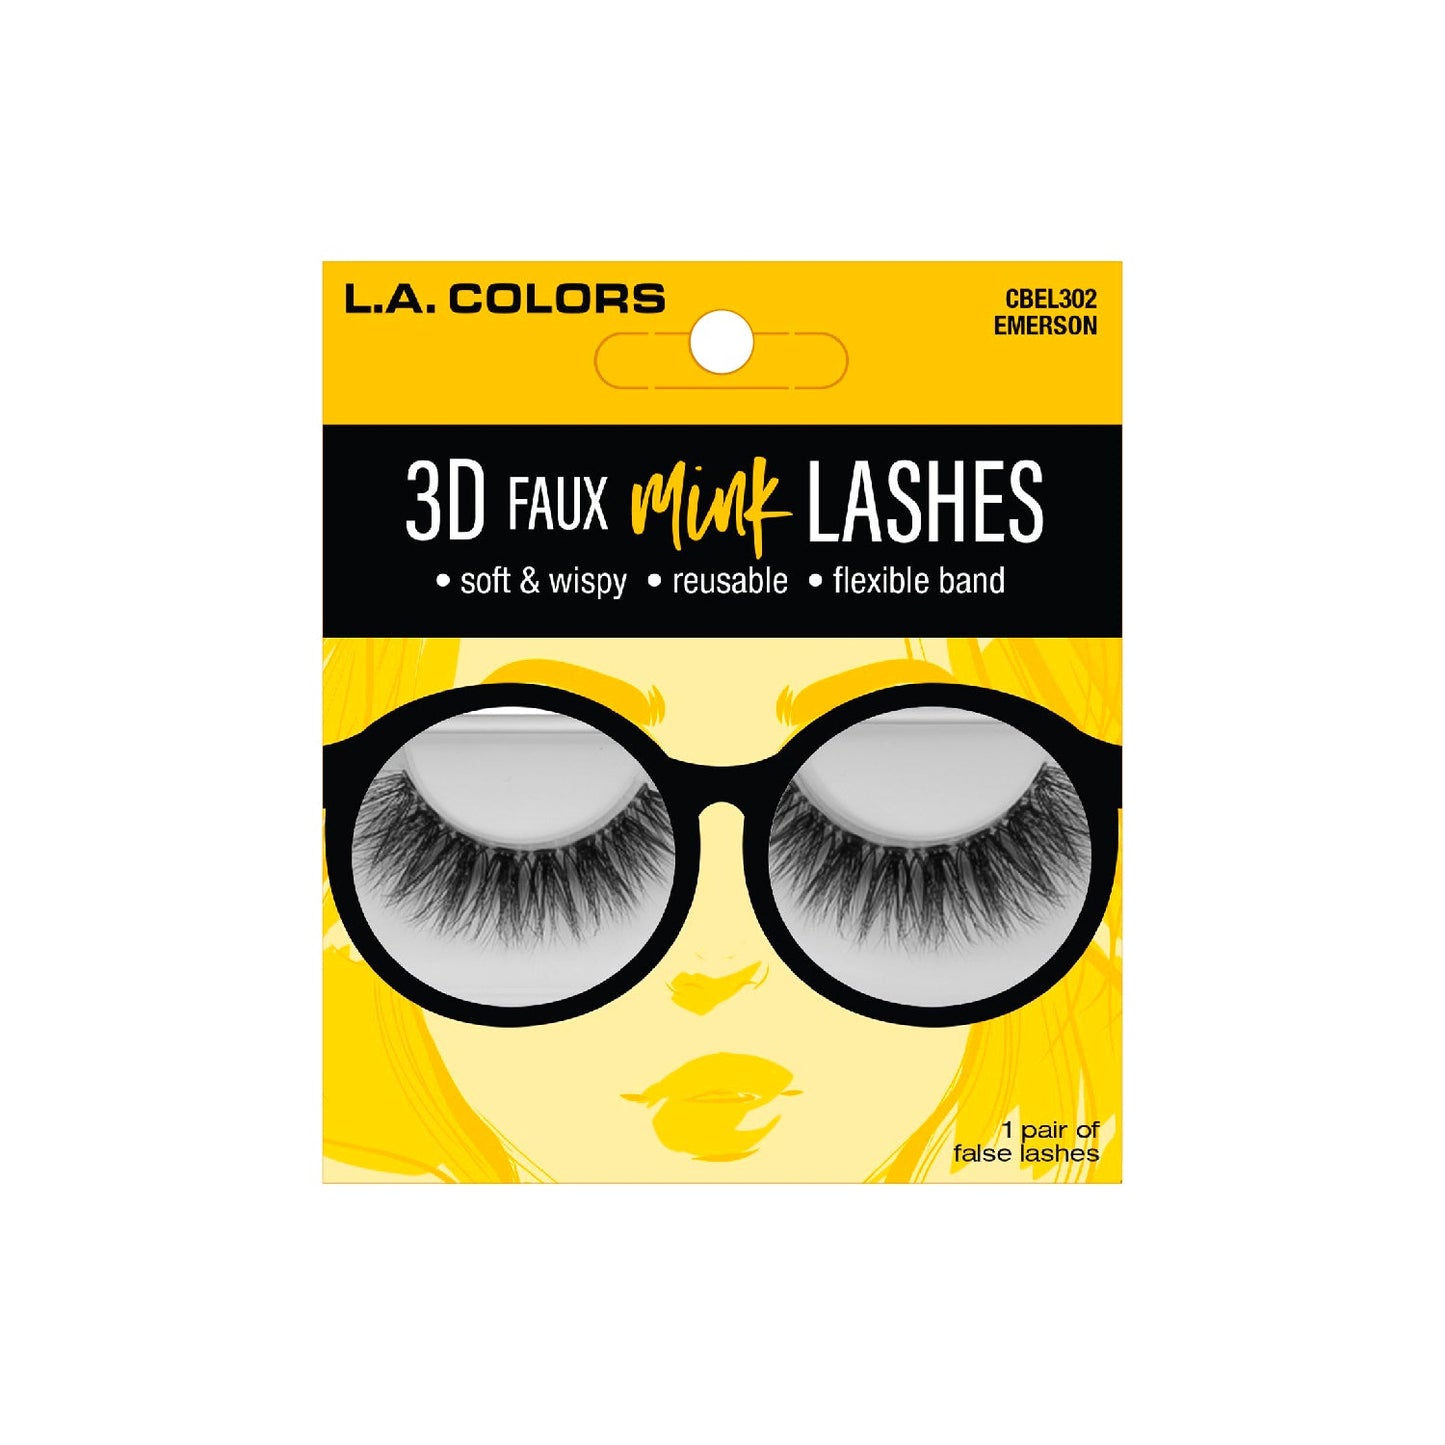 L.A. COLORS 3D Faux Mink Lashes